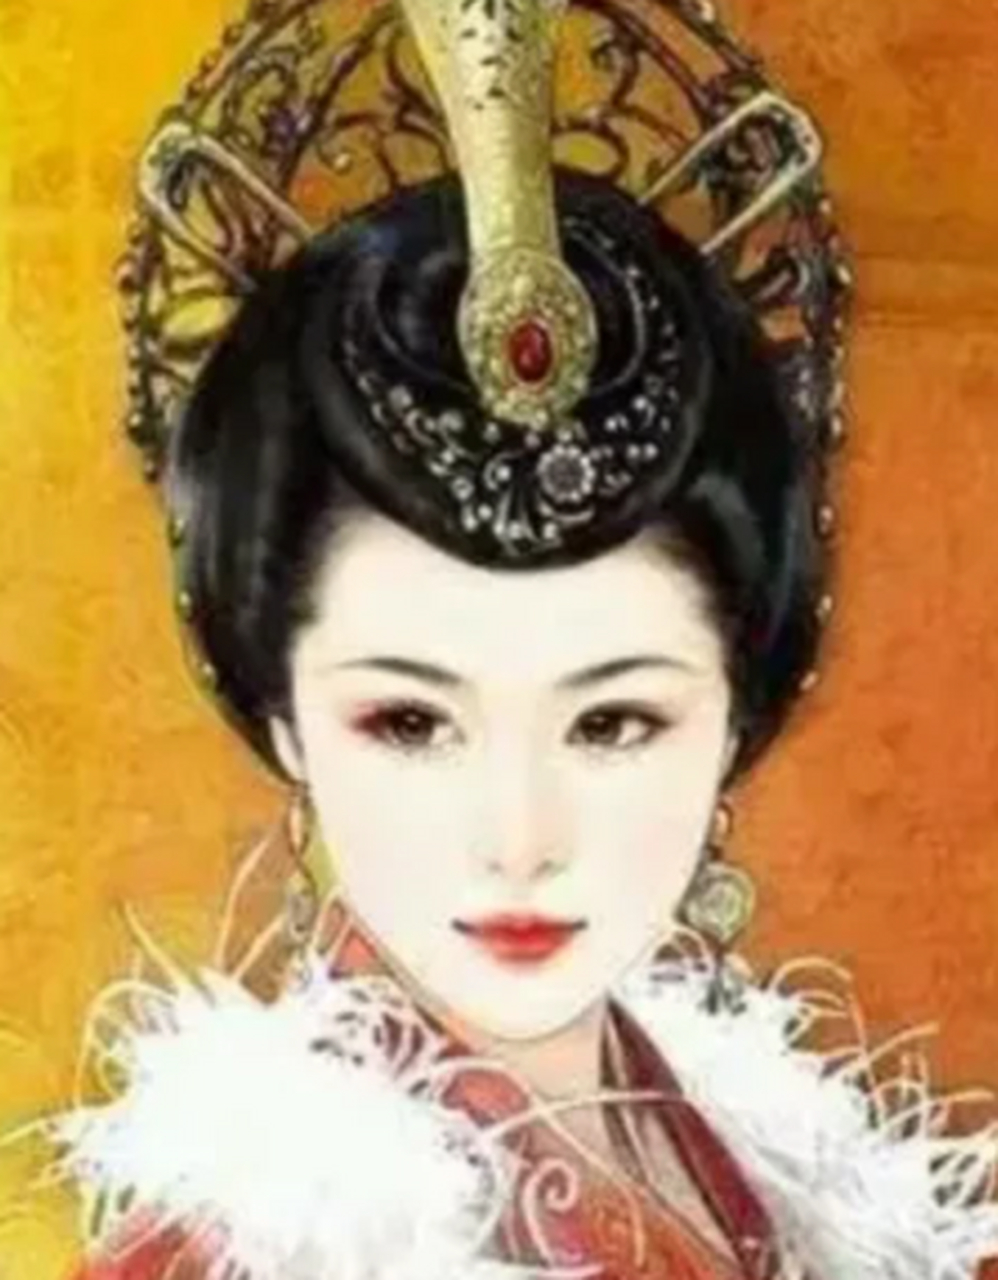 辽太后萧绰:中国少数民族历史上的传奇女性